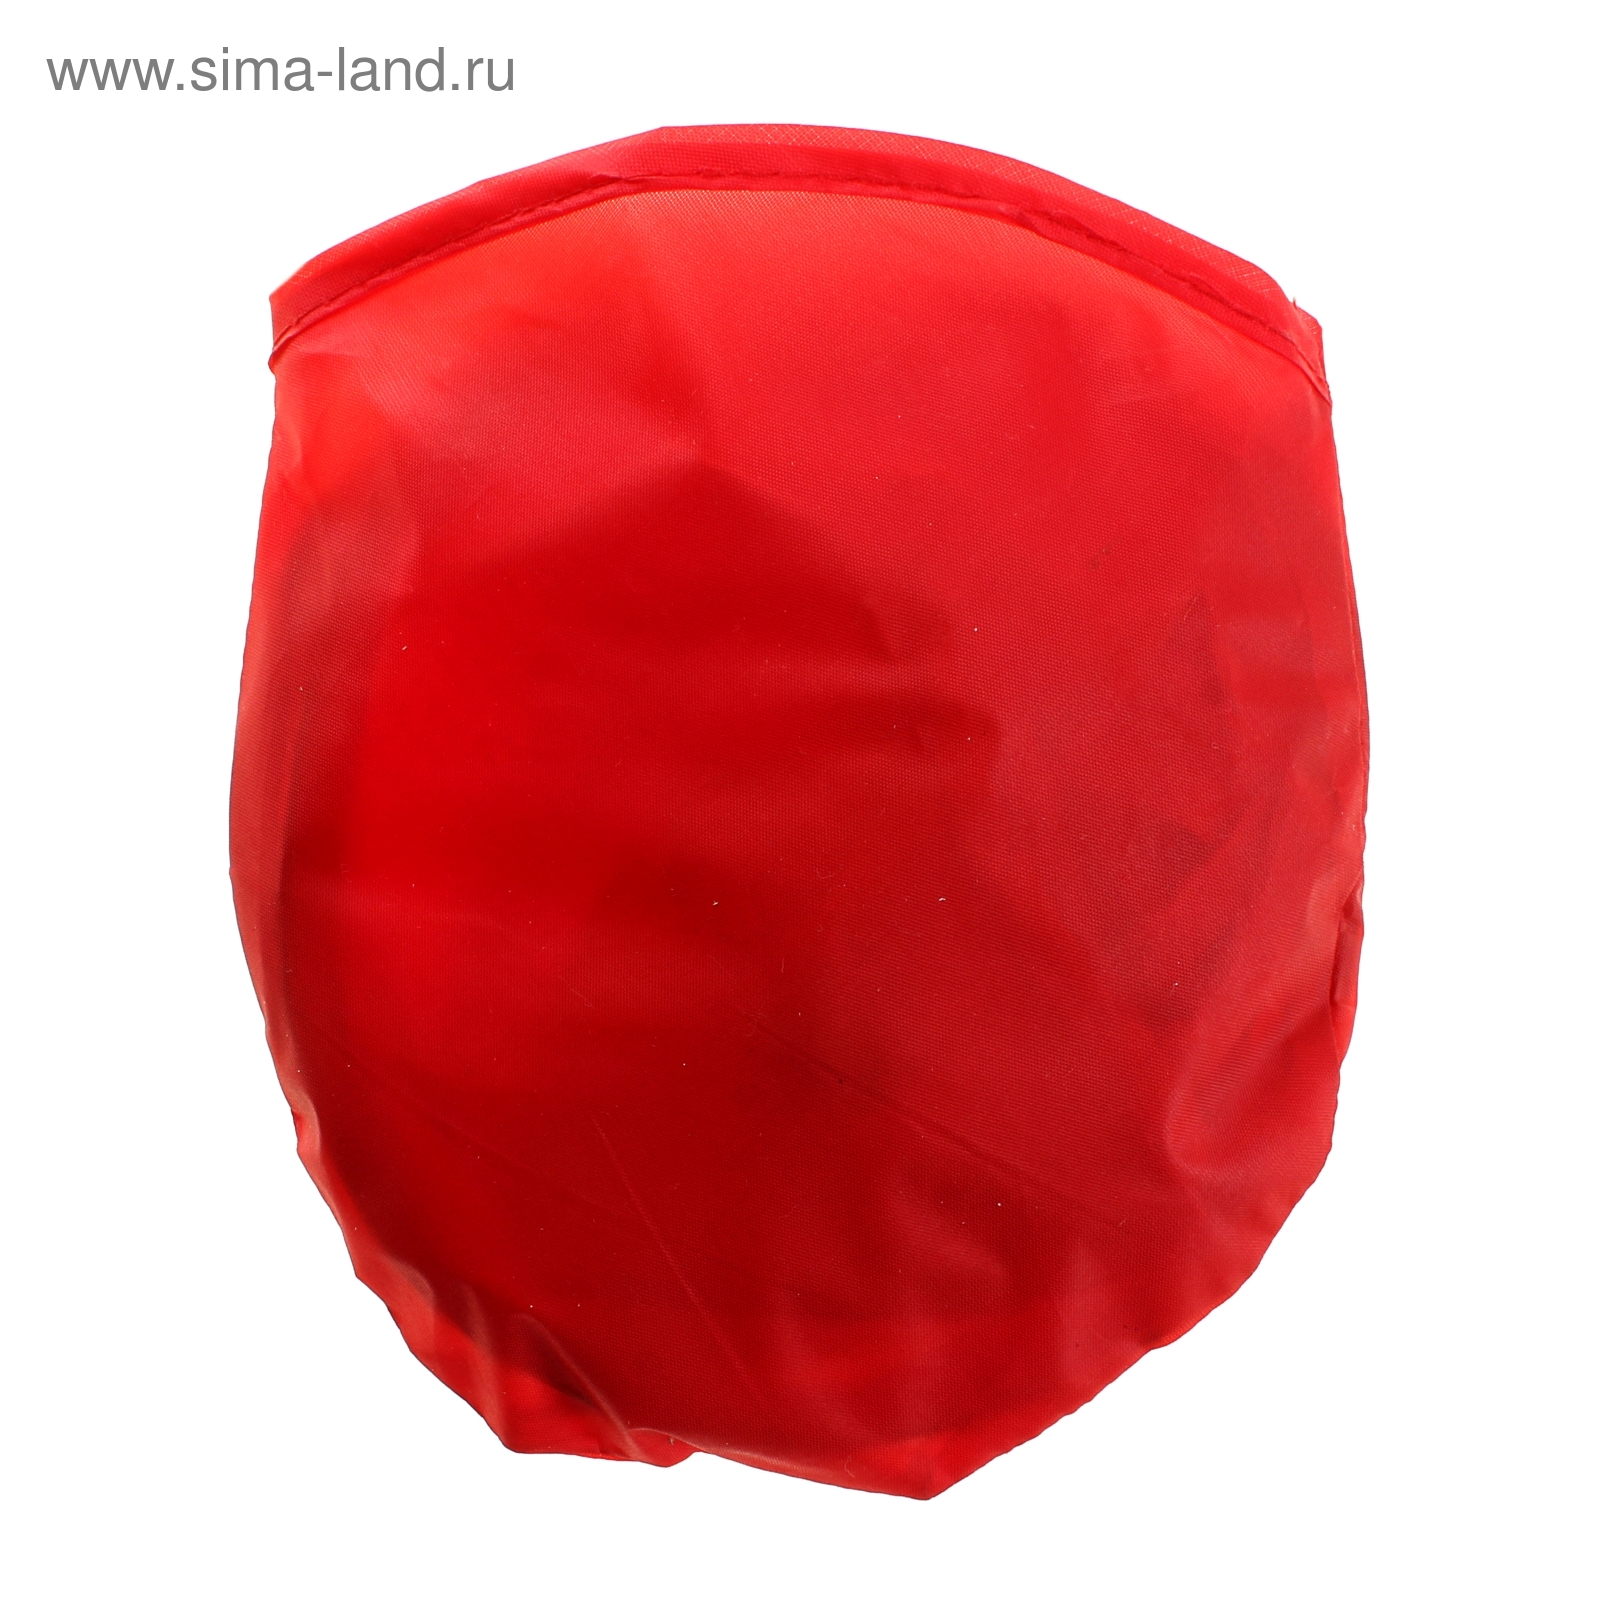 Шляпа складная в чехле, цвет красный, обхват головы 58 см, ширина полей 9 см